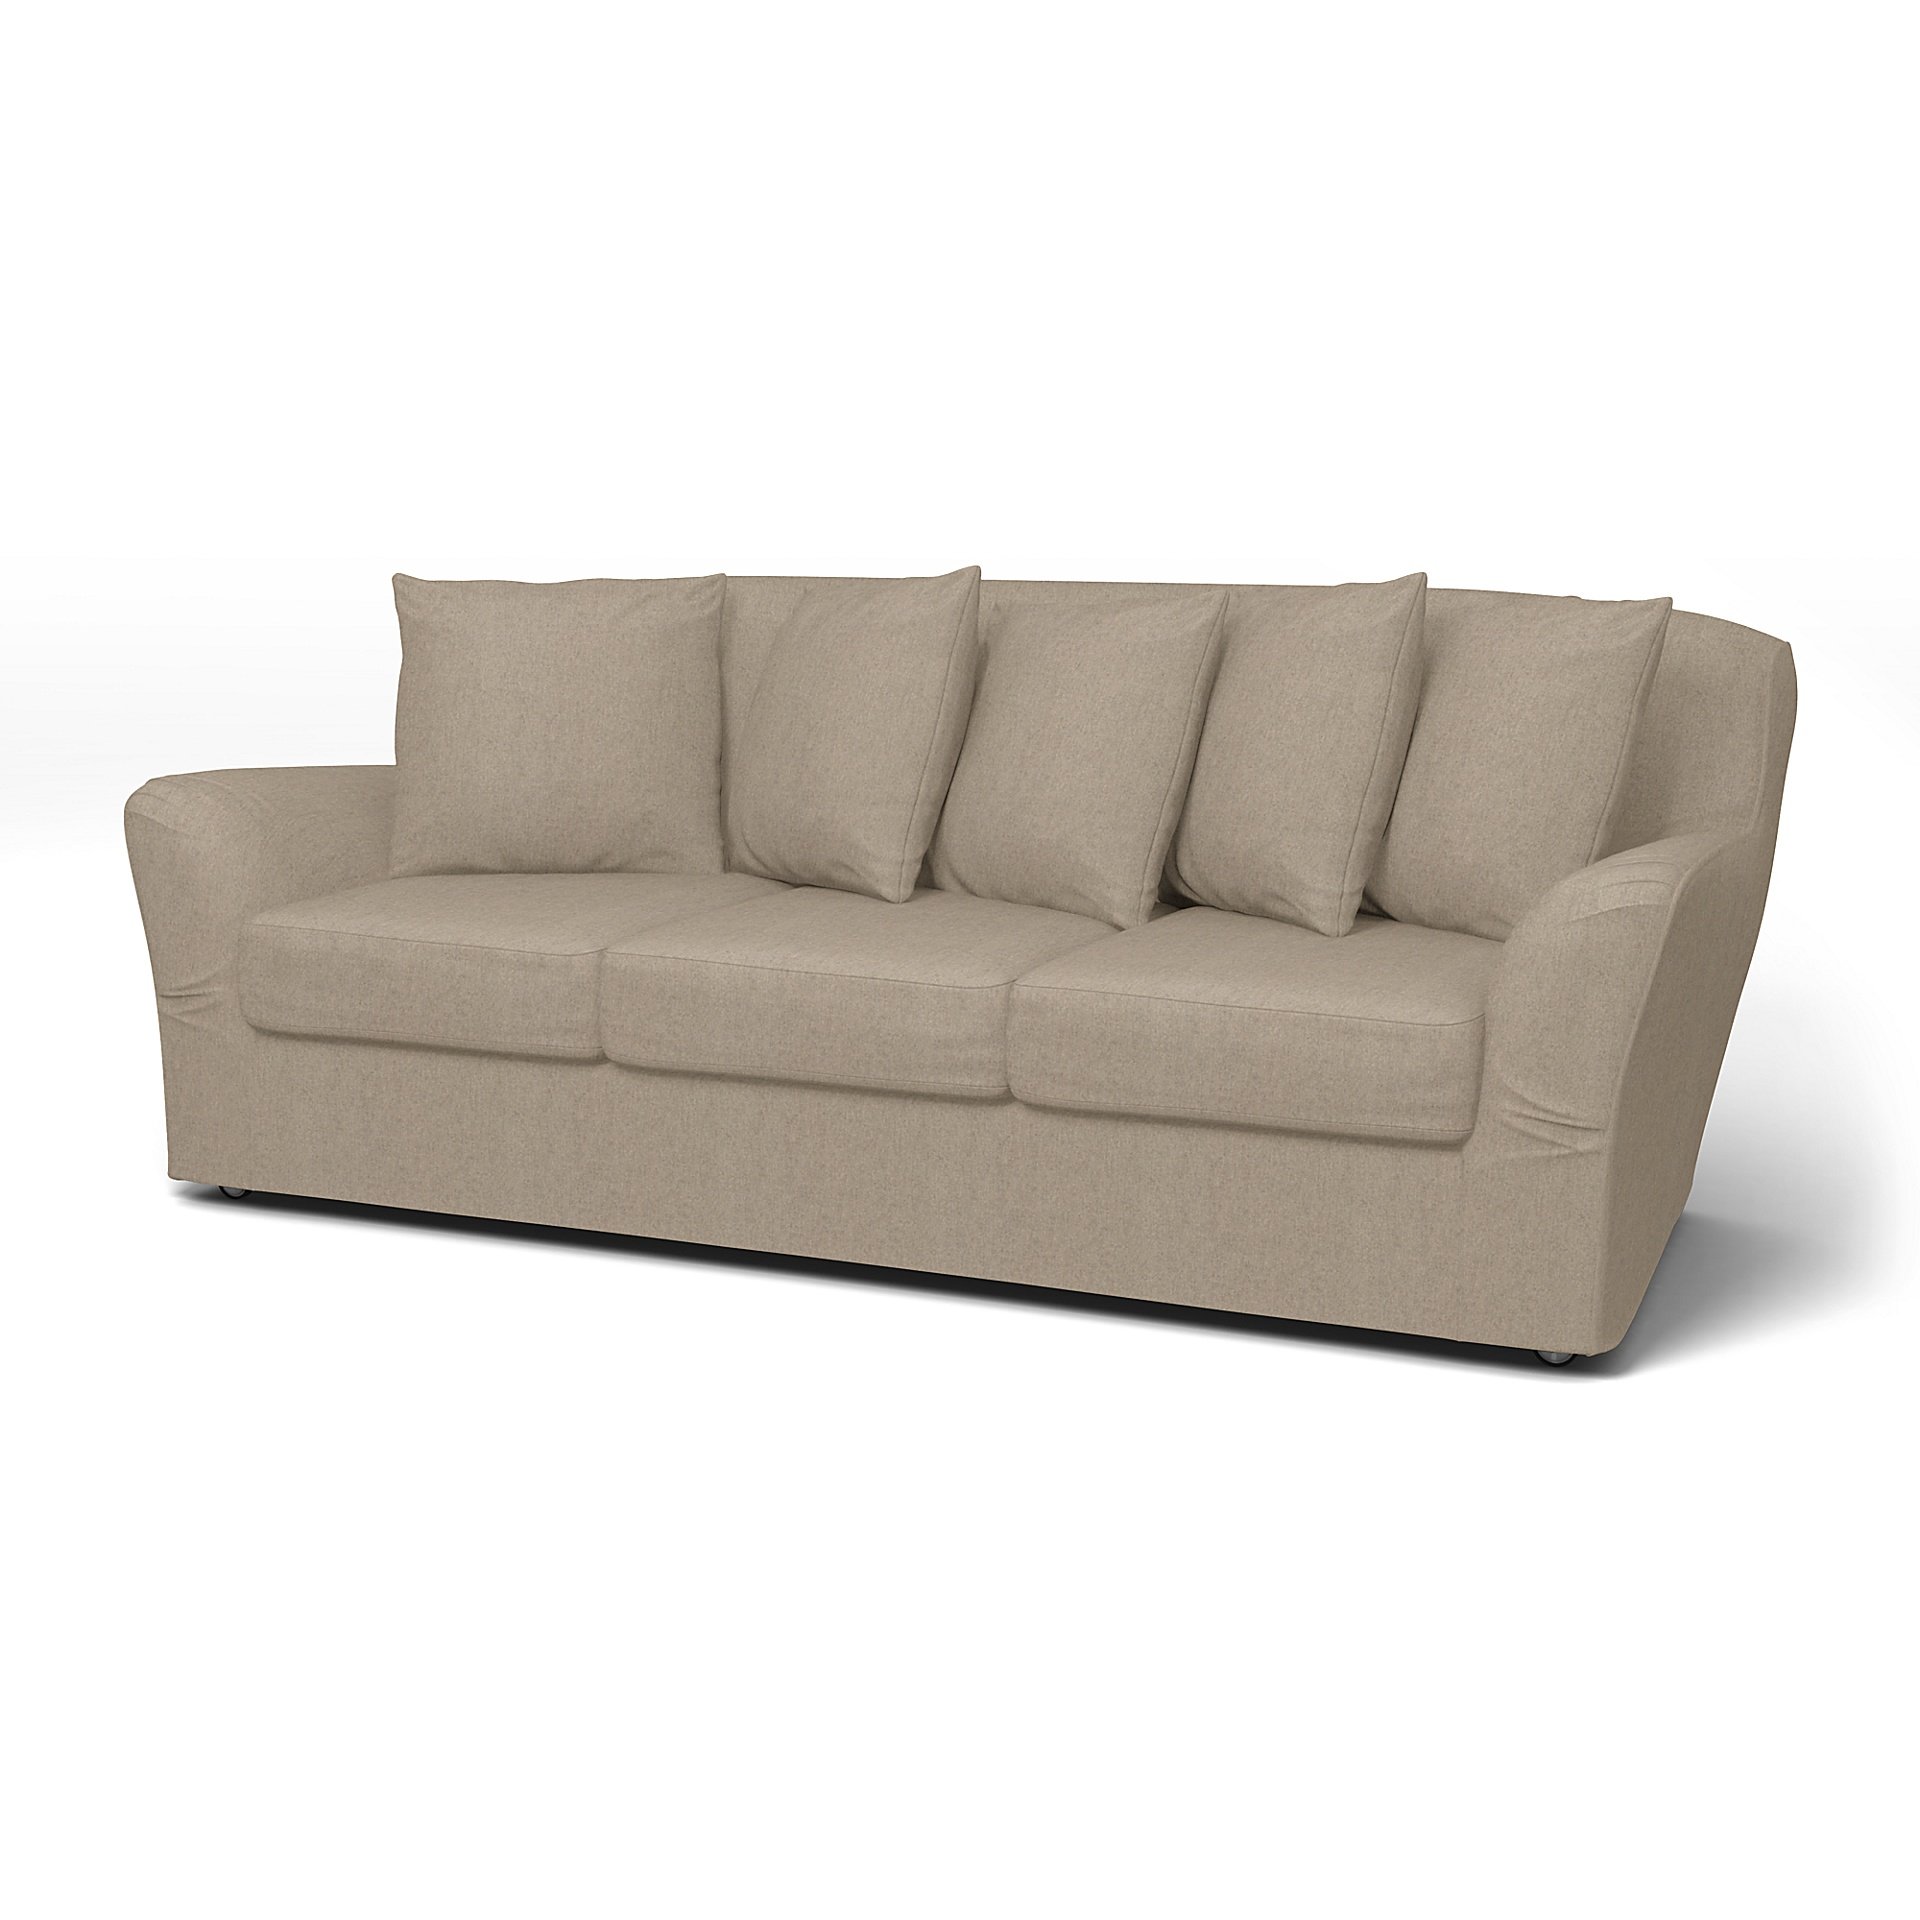 IKEA - Tomelilla 3 seater sofa, Birch, Wool - Bemz